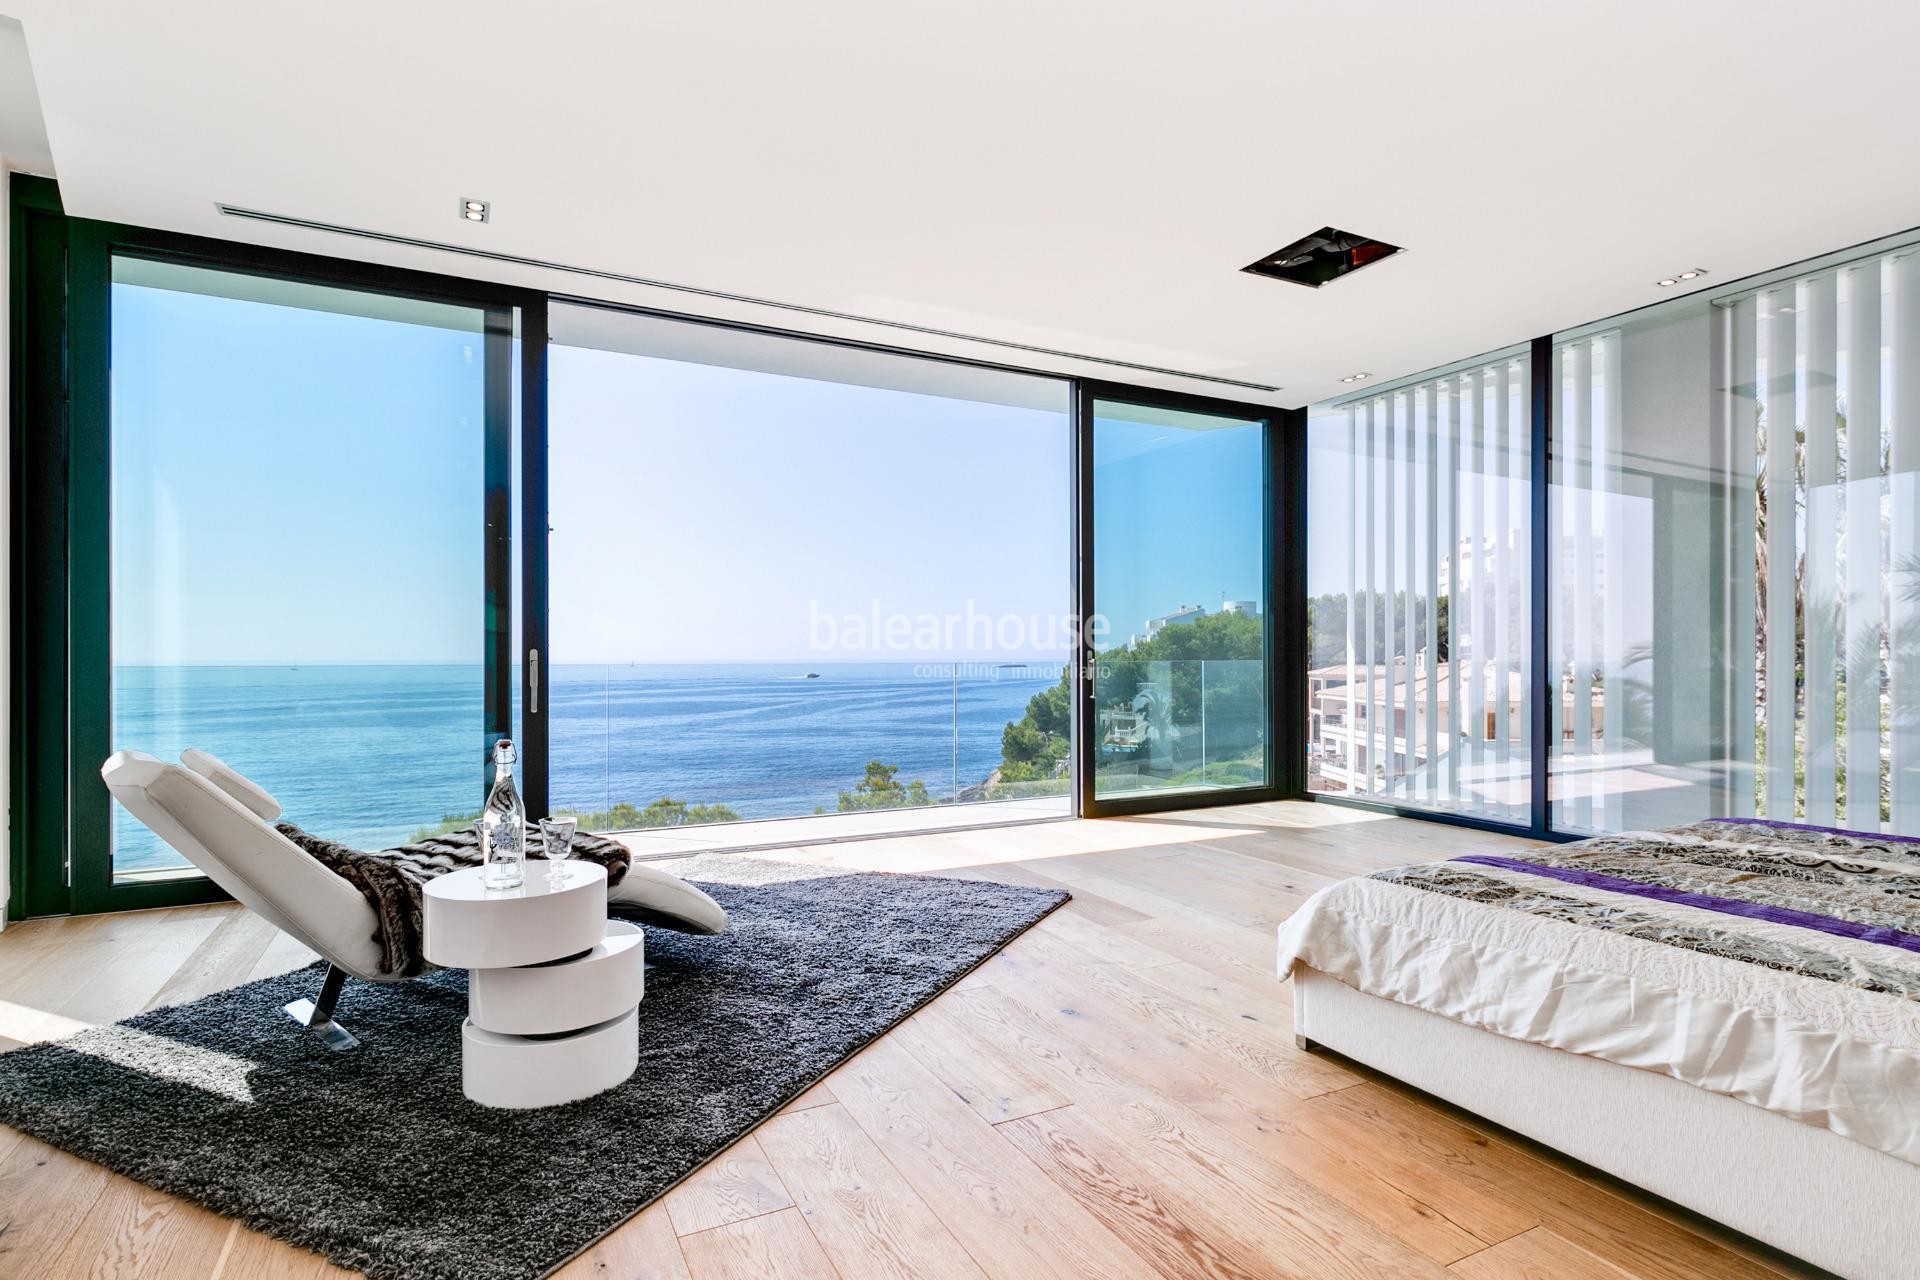 Espectacular villa de diseño moderno en primera línea y con acceso directo al mar en Cala Vinyas